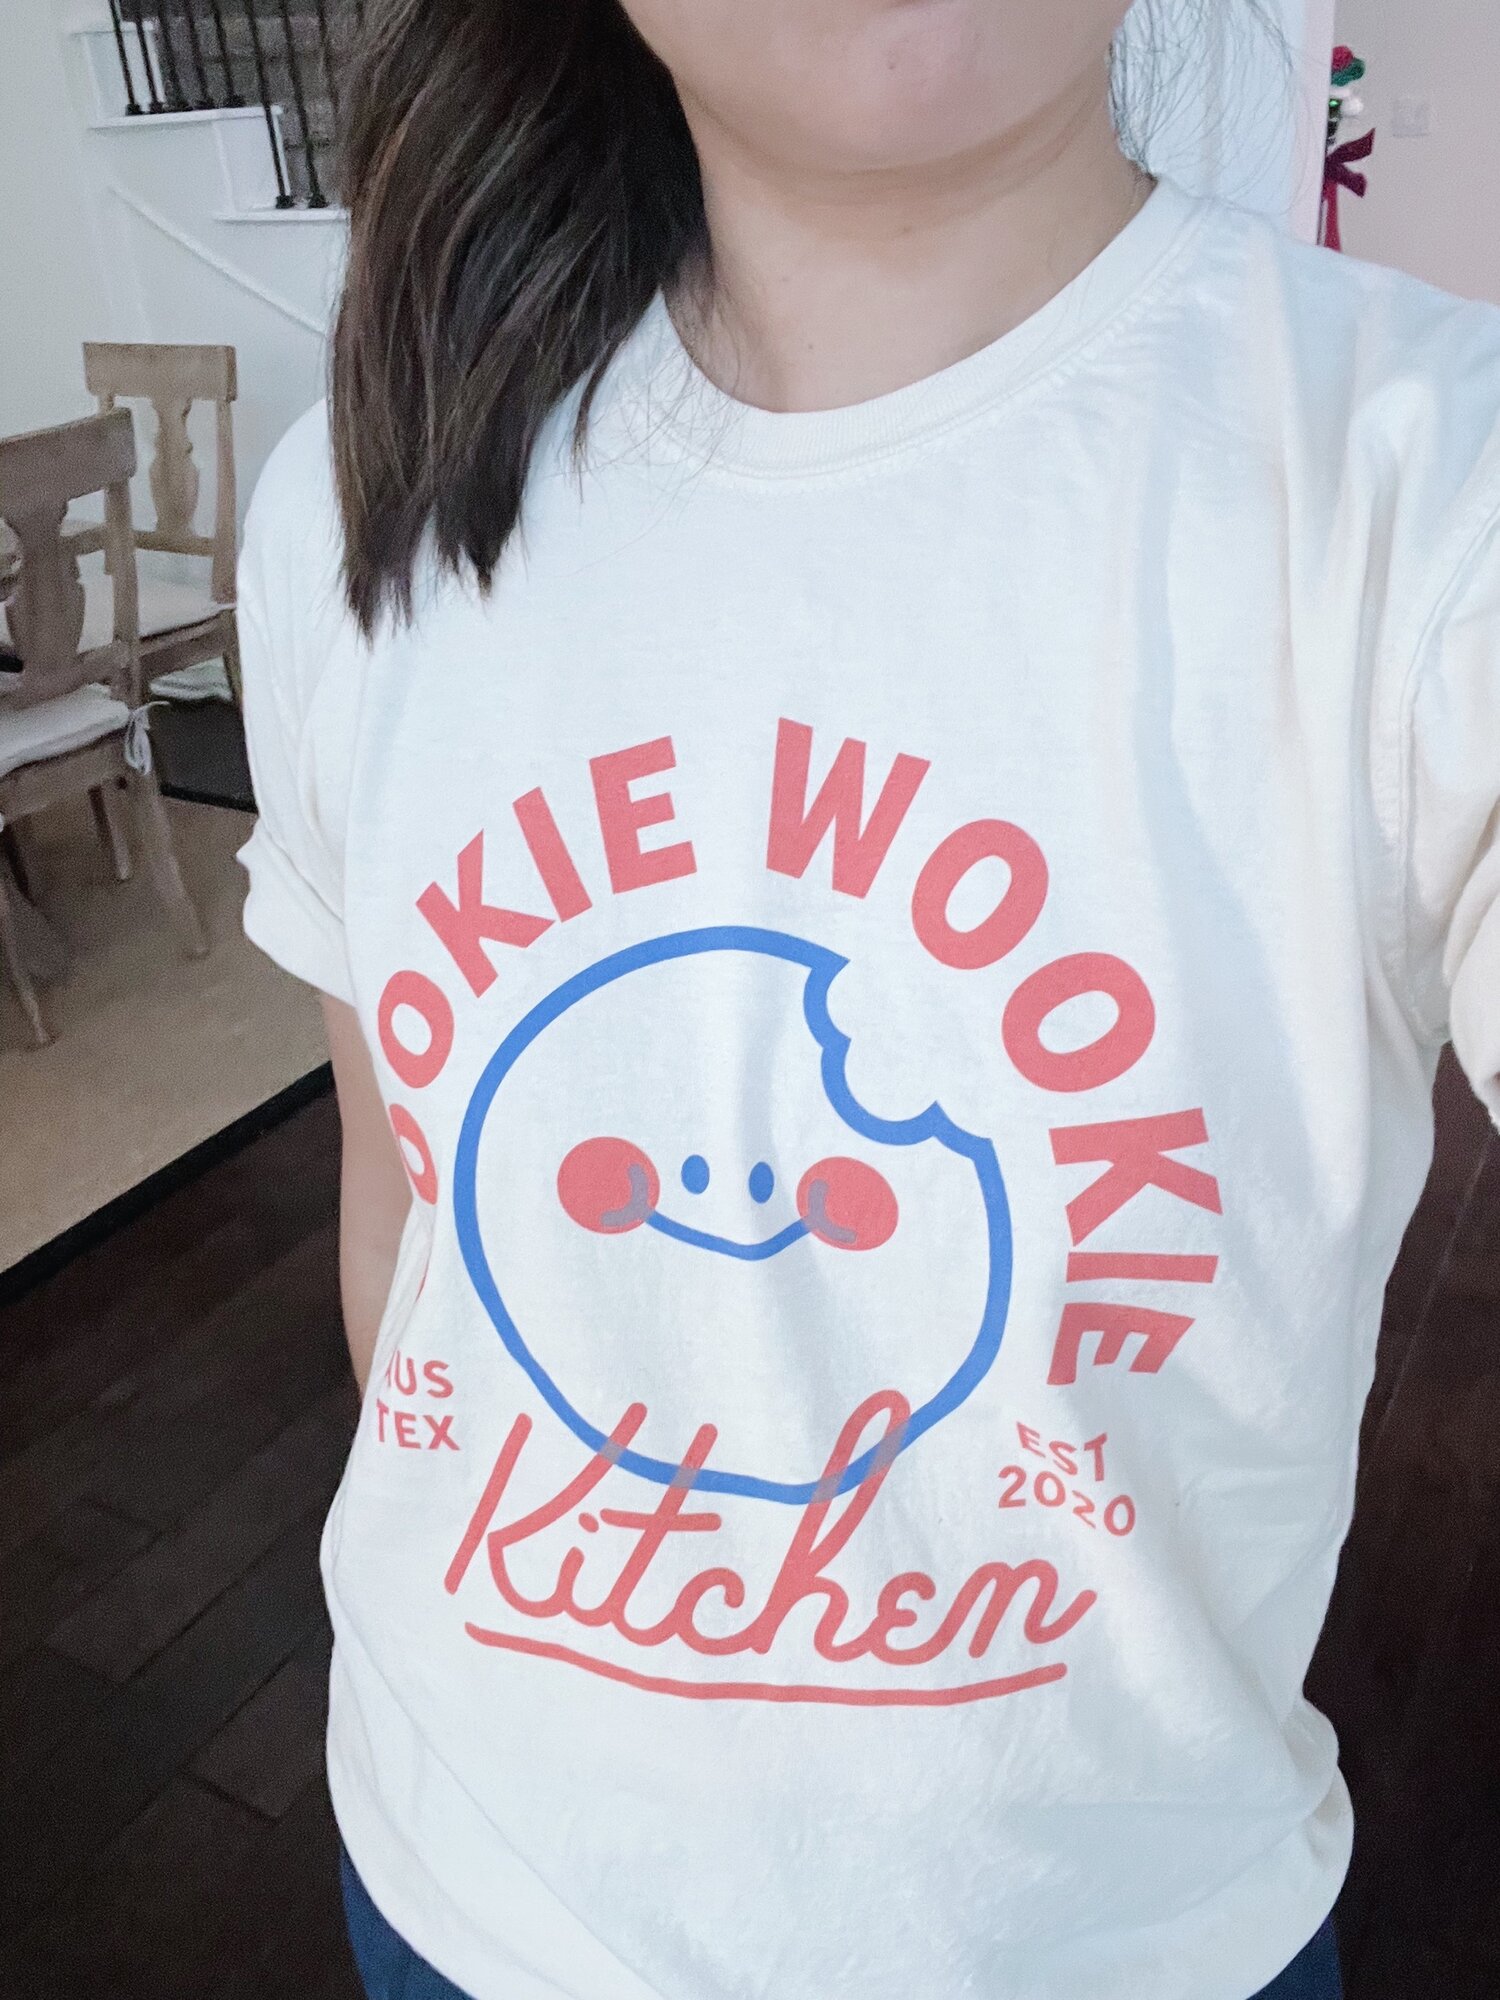 Cookie Wookie T-Shirt — Cookie Kitchen Wookie